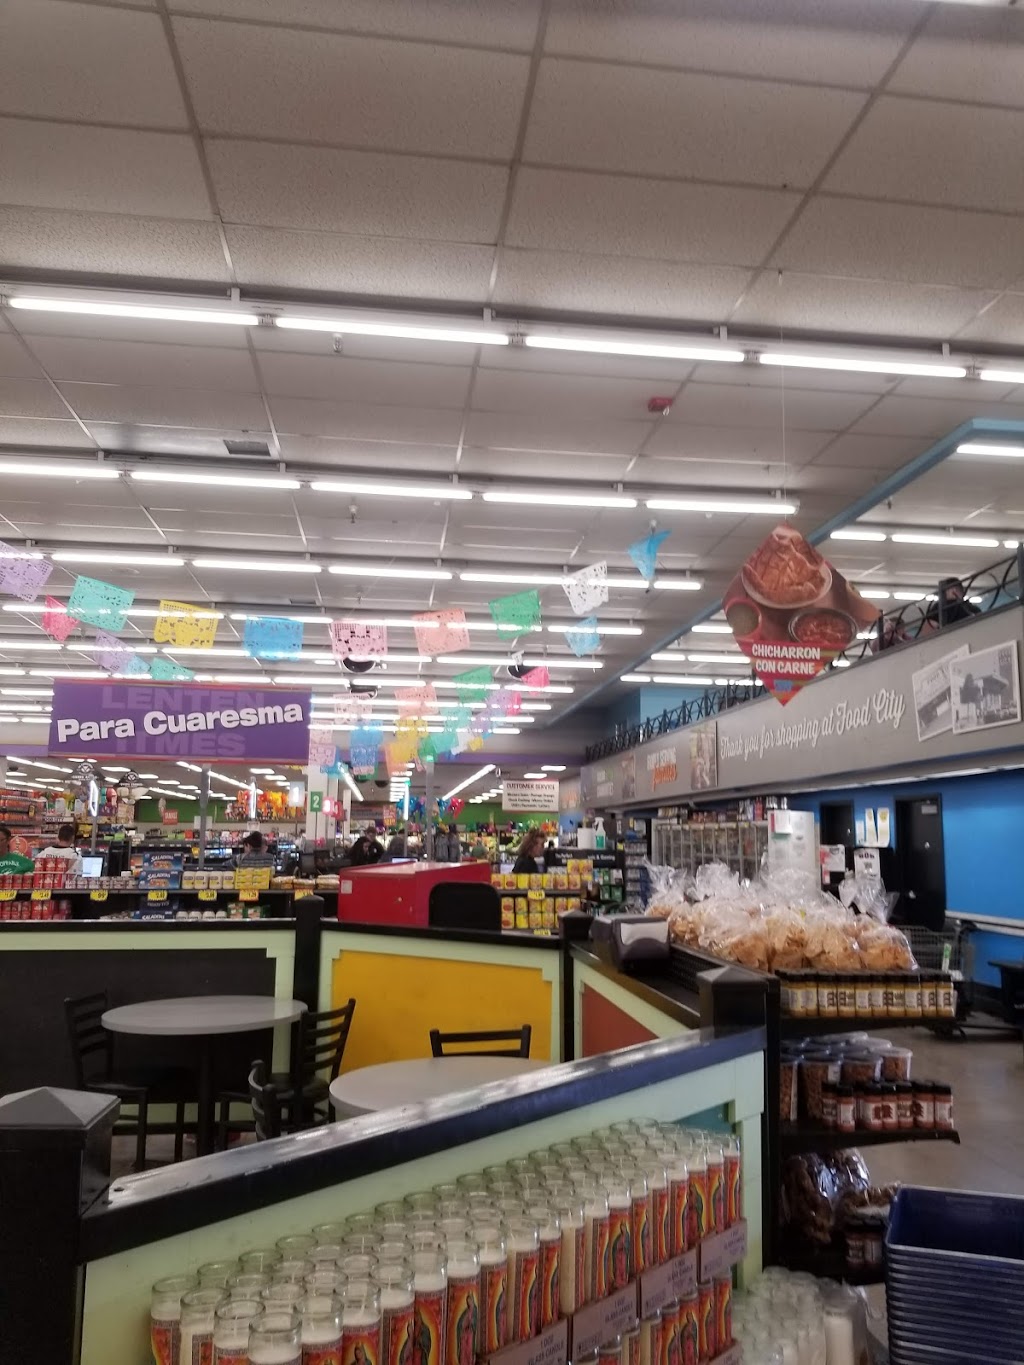 Food City Supermarket | 1162 E Florence Blvd, Casa Grande, AZ 85122, USA | Phone: (520) 836-8841